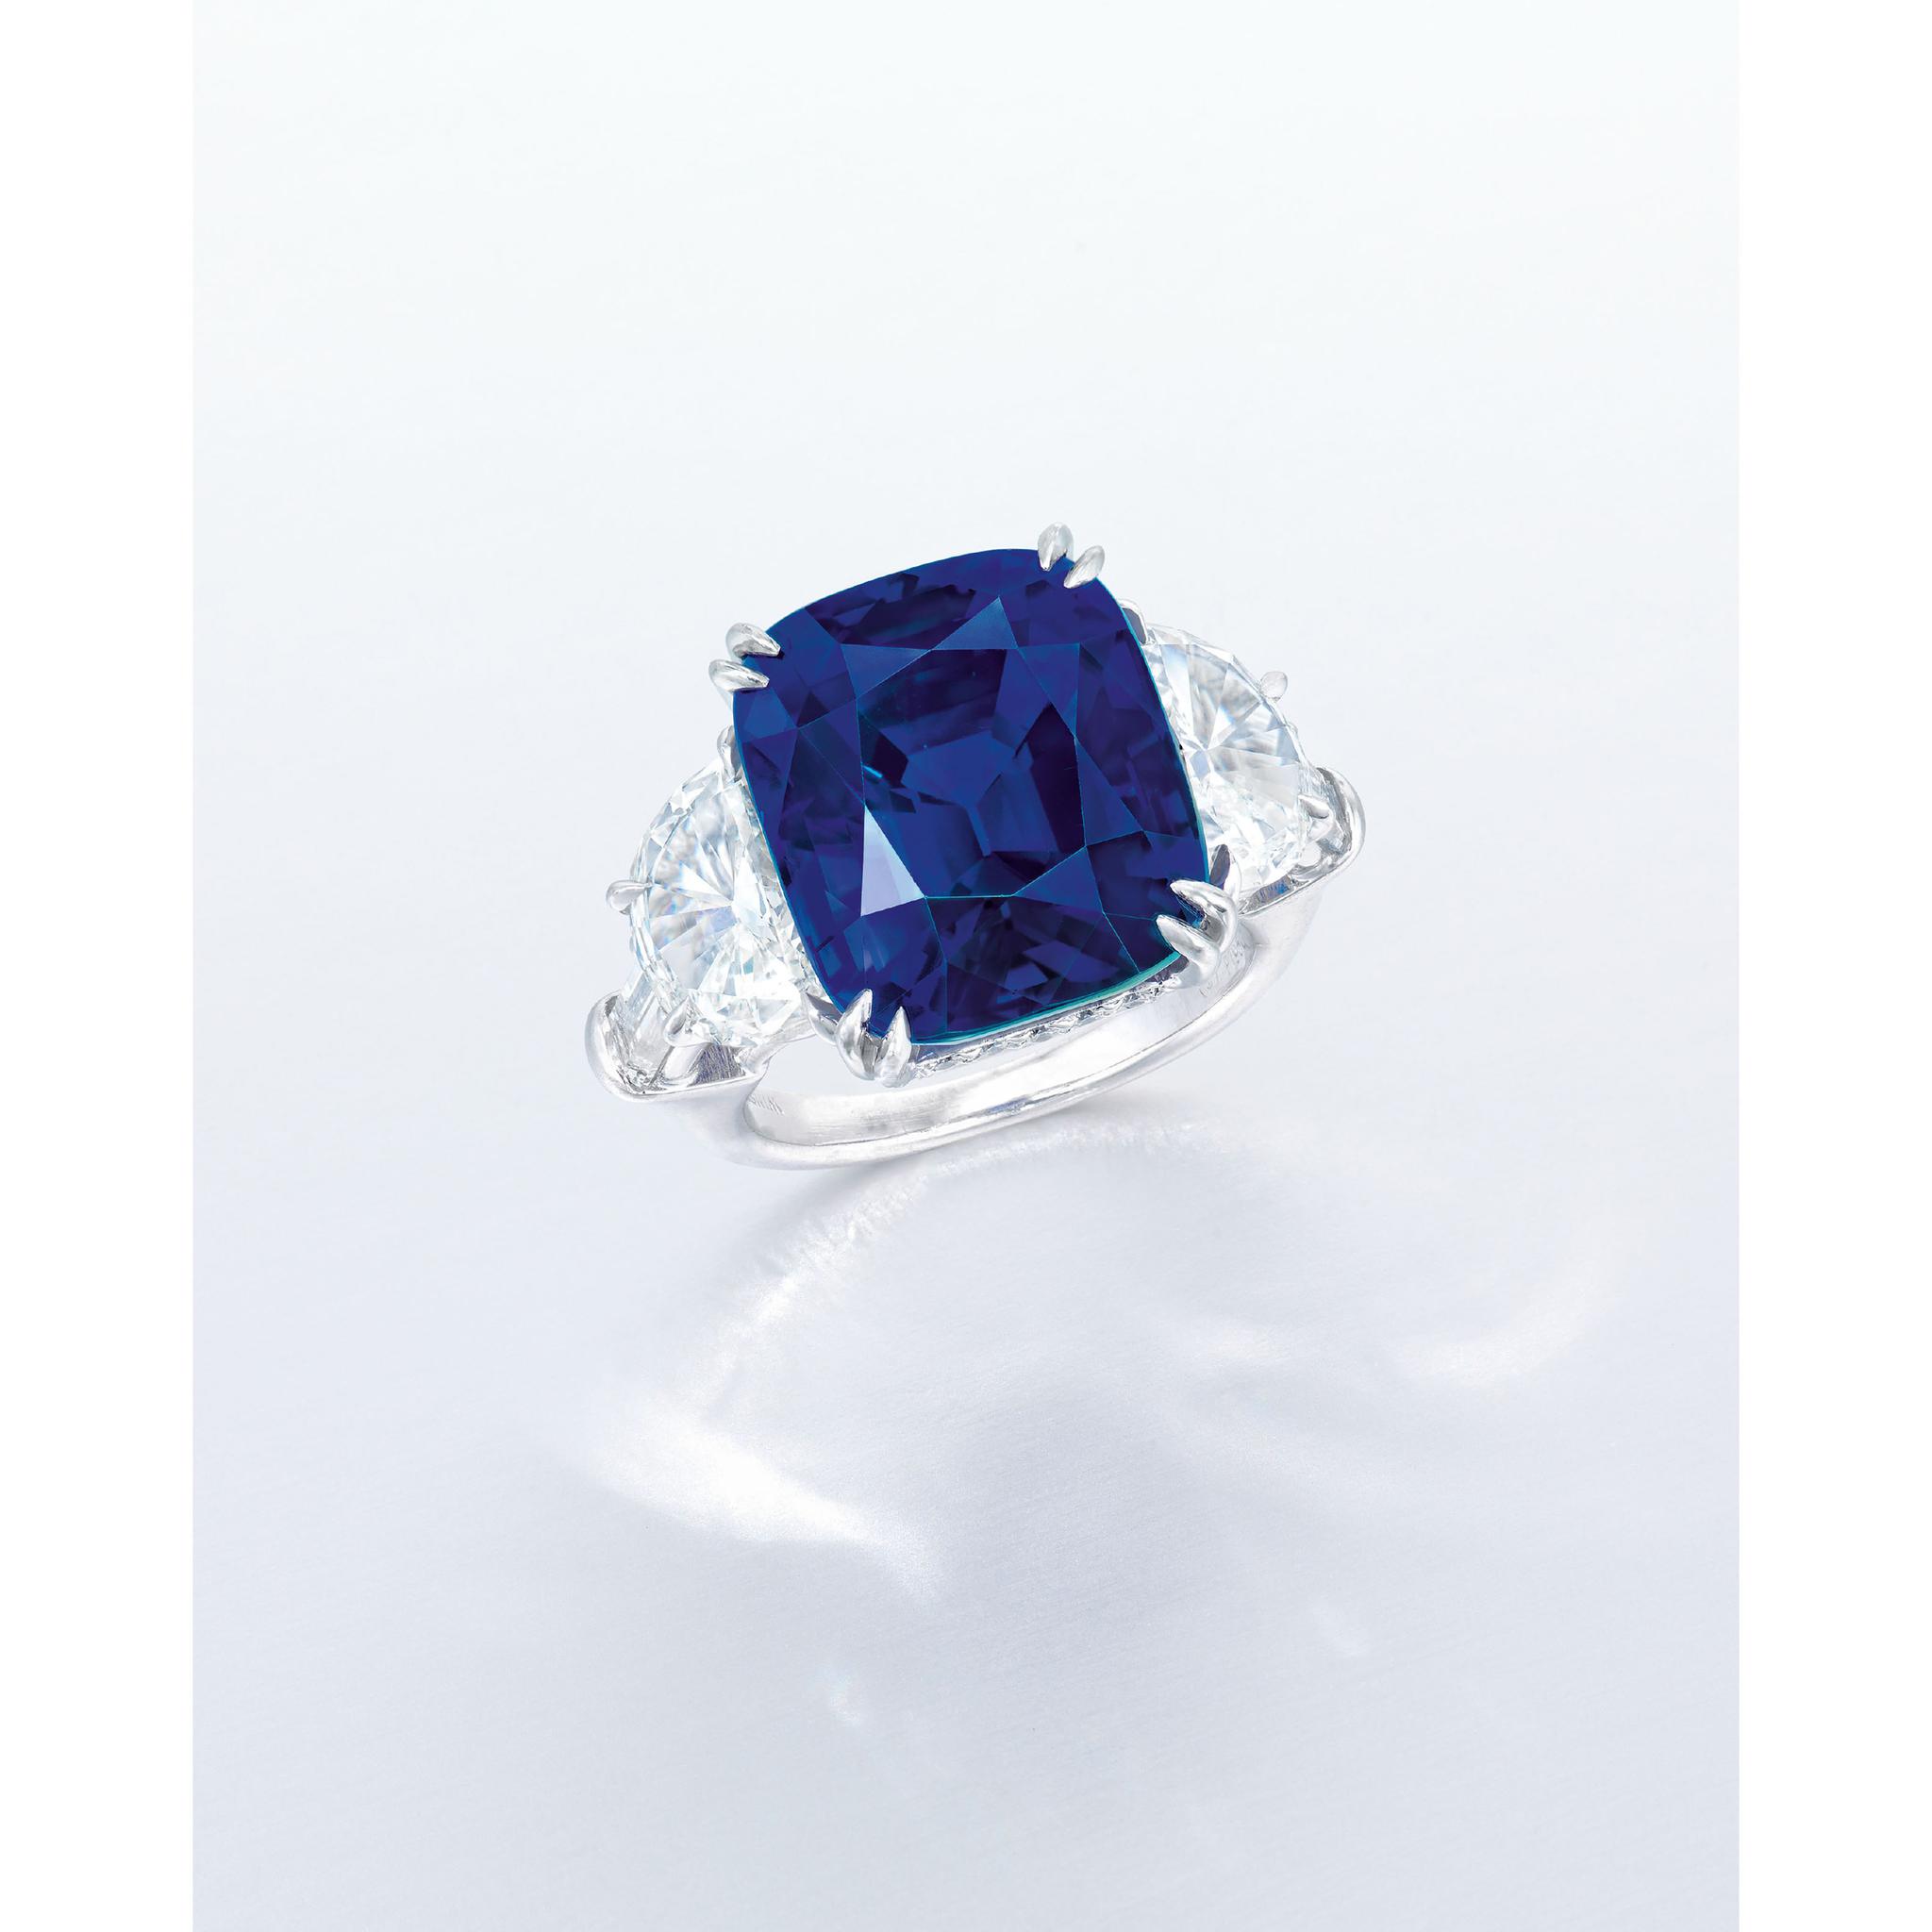 从具体情况来看蓝宝石戒指的价格不一定低于钻戒